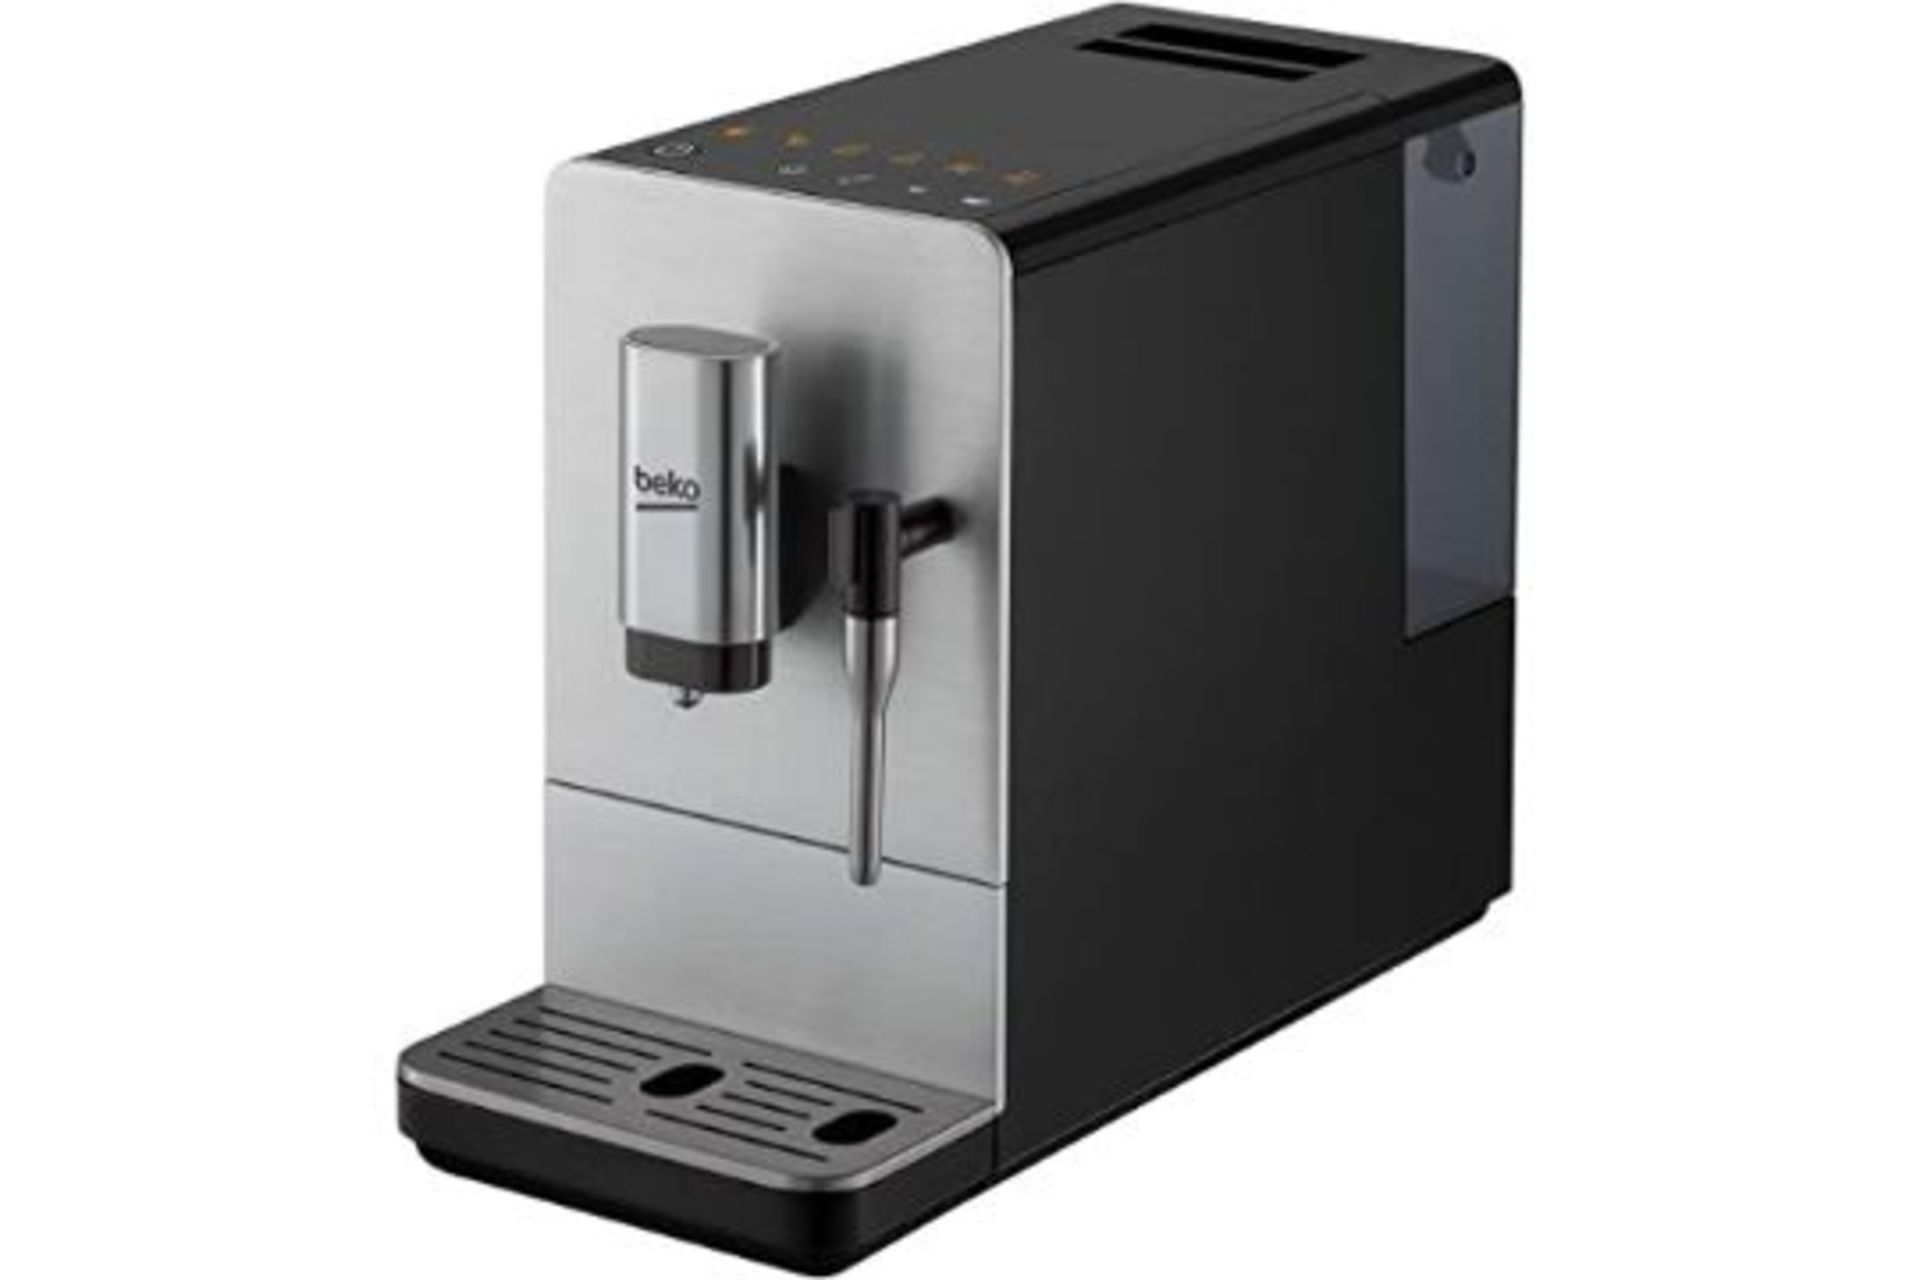 RRP -£259.00 Beko 8814253200 Bean to Cup Coffee Machine CEG5311X 19 Bar Pressure